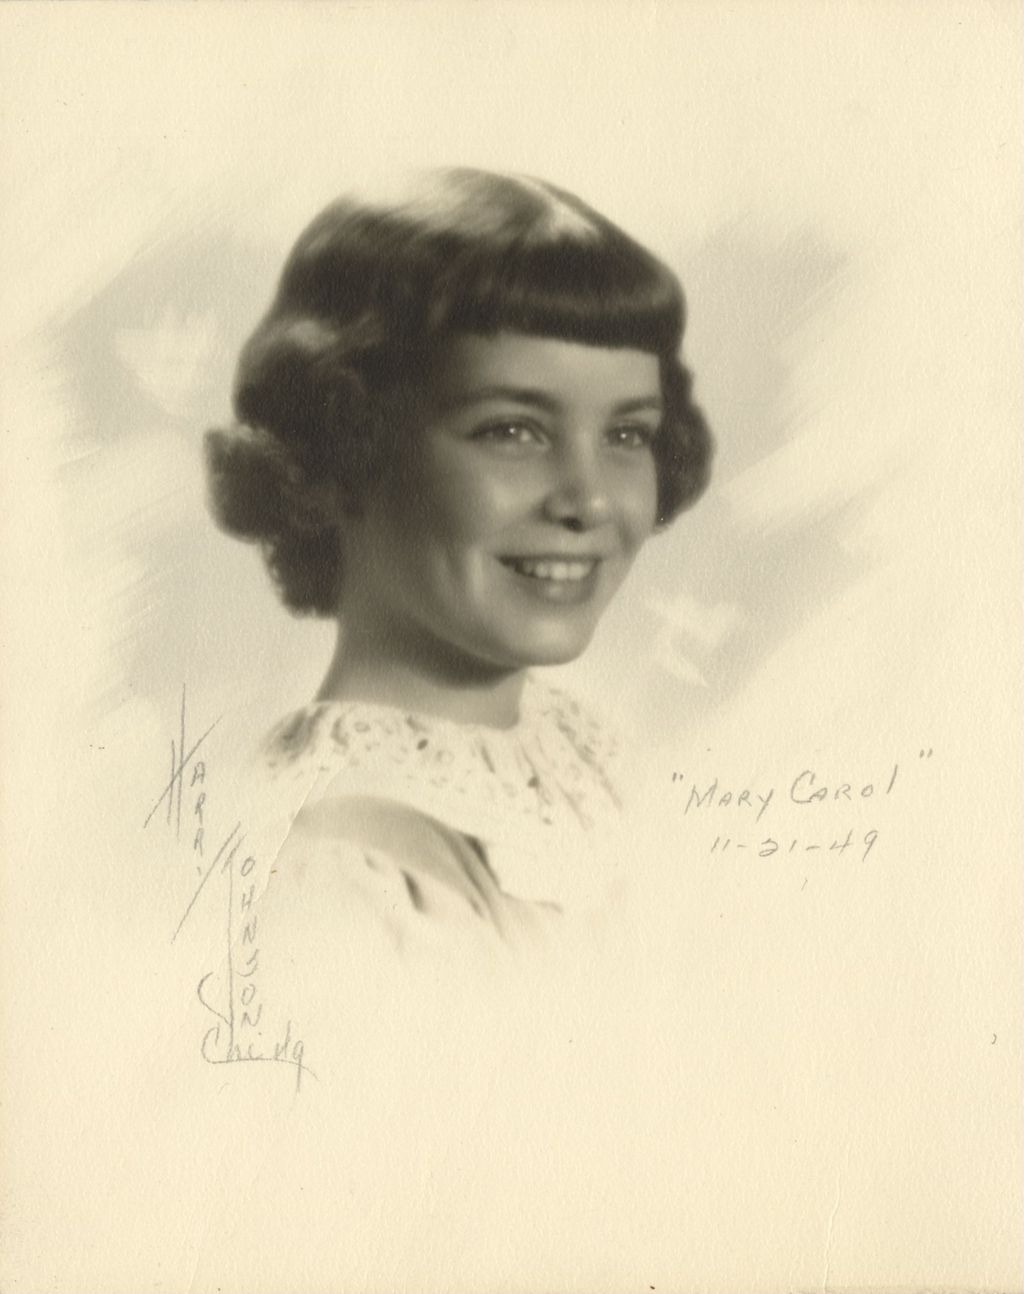 Mary Carol [Daley]